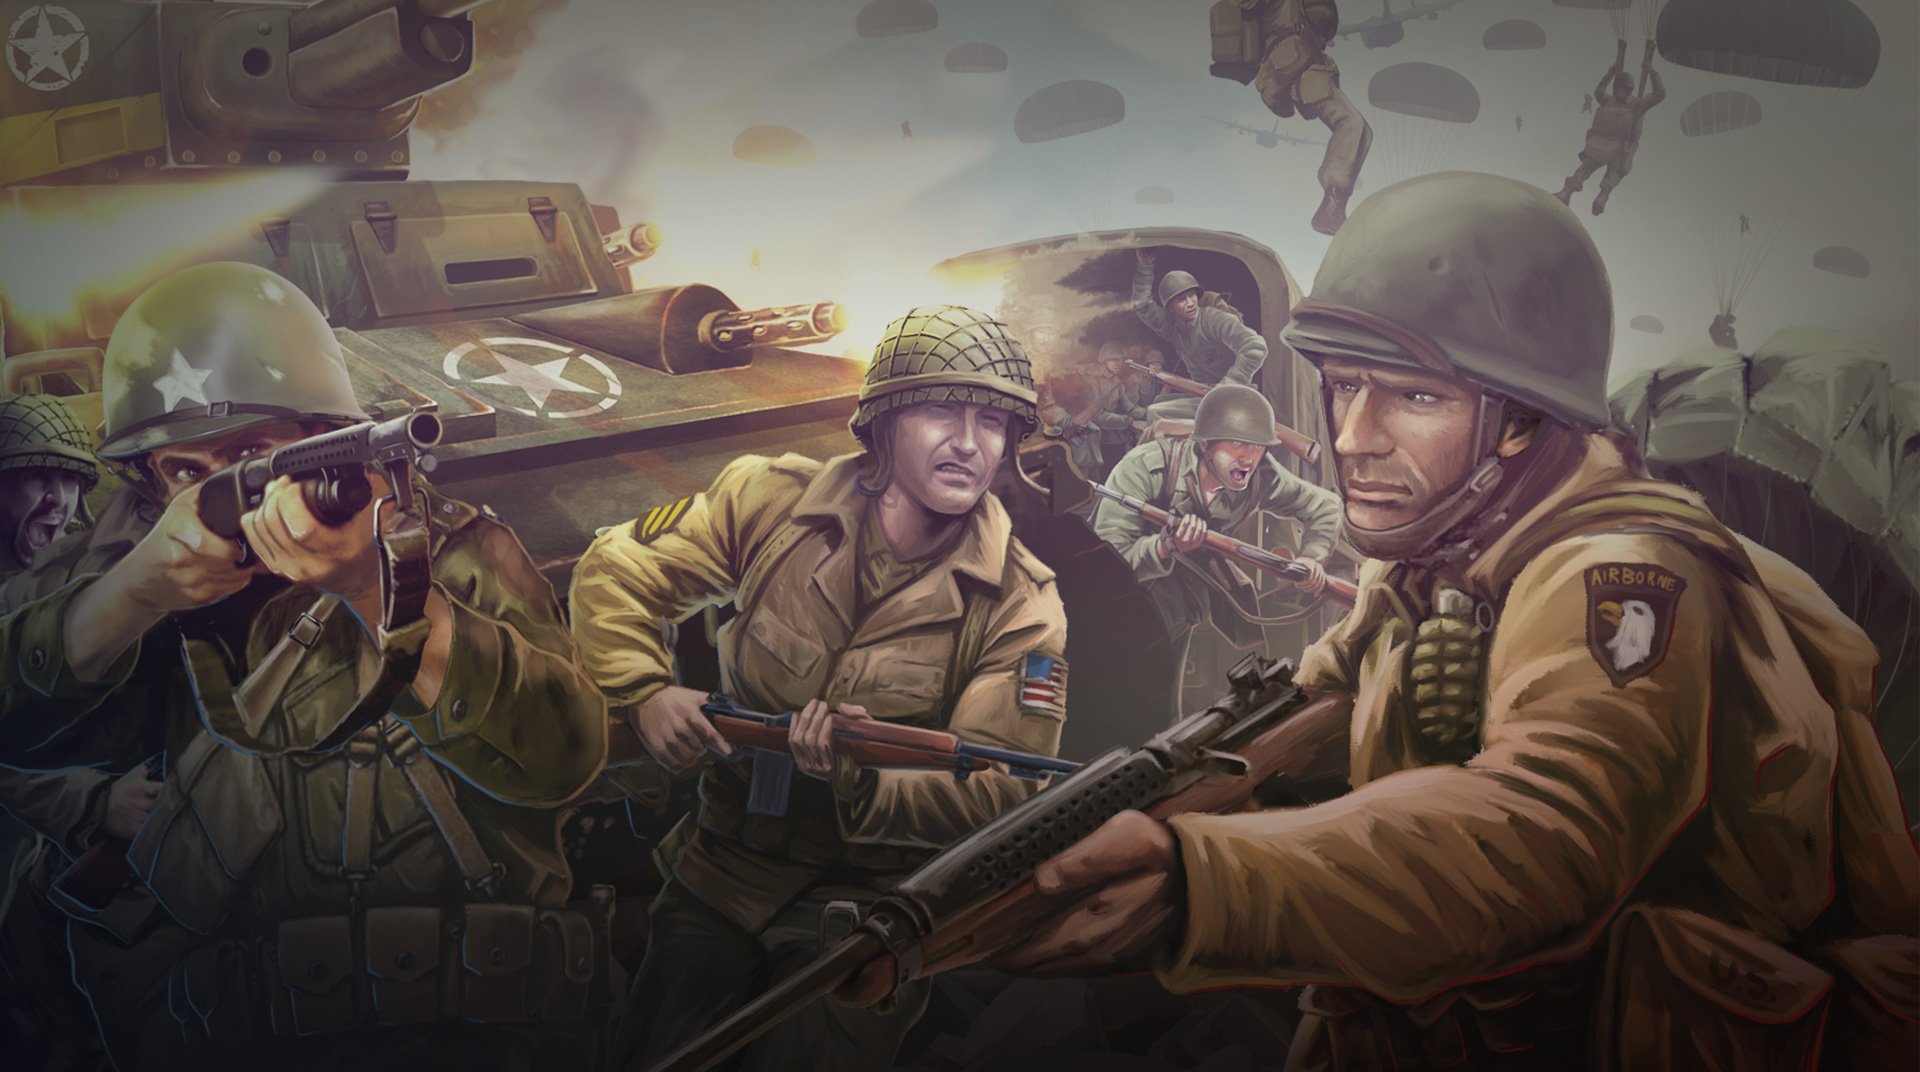 Siege: World War II